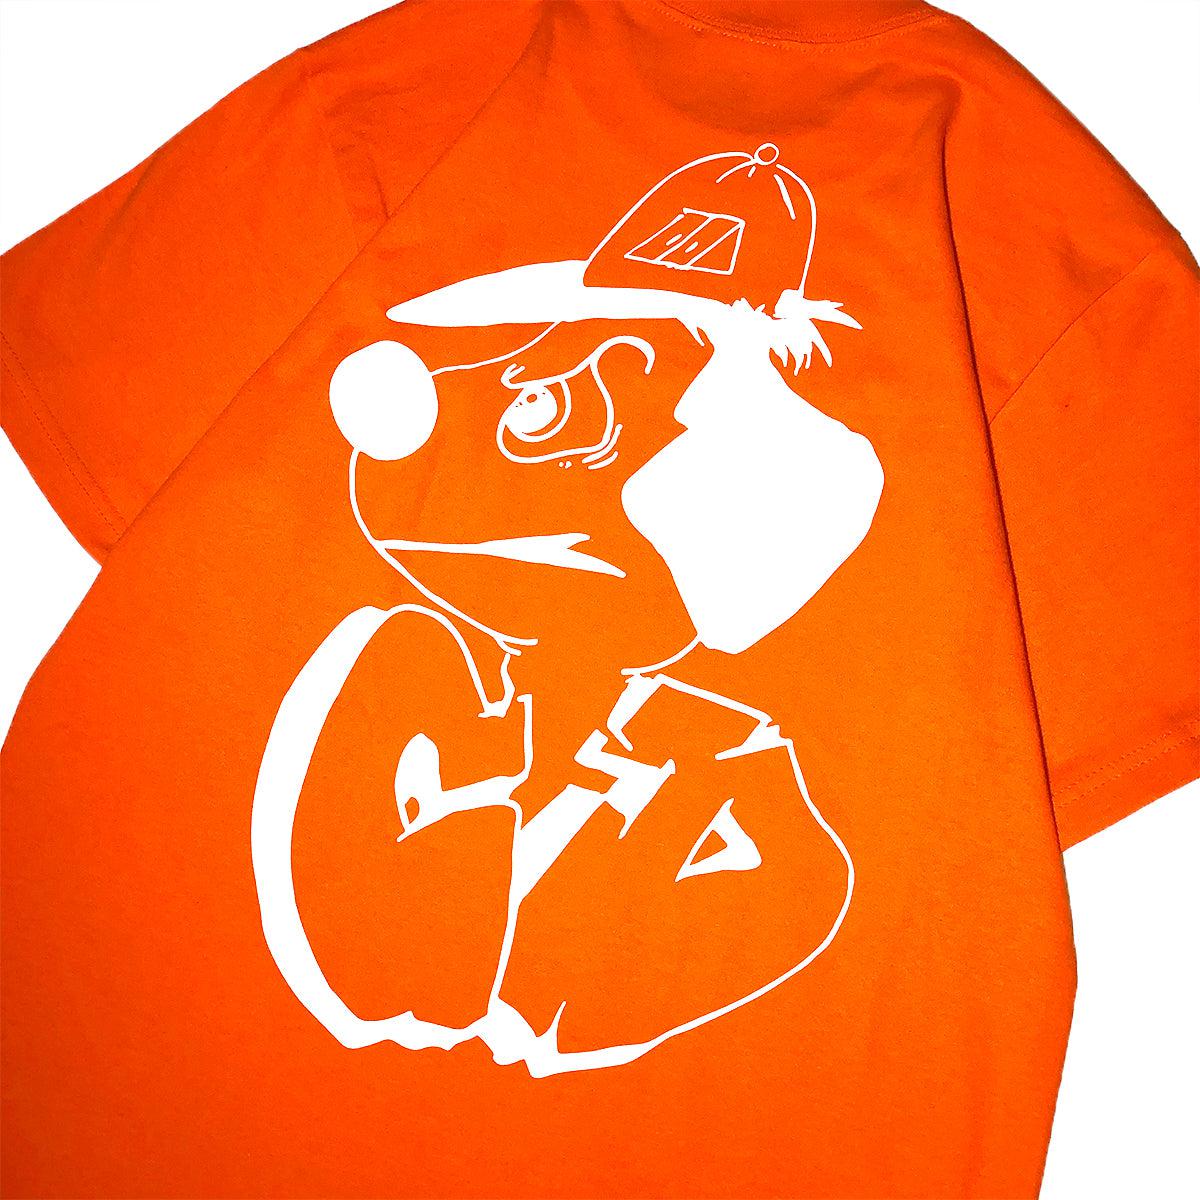 CELLADOORS - Underdog T-Shirt/Orange